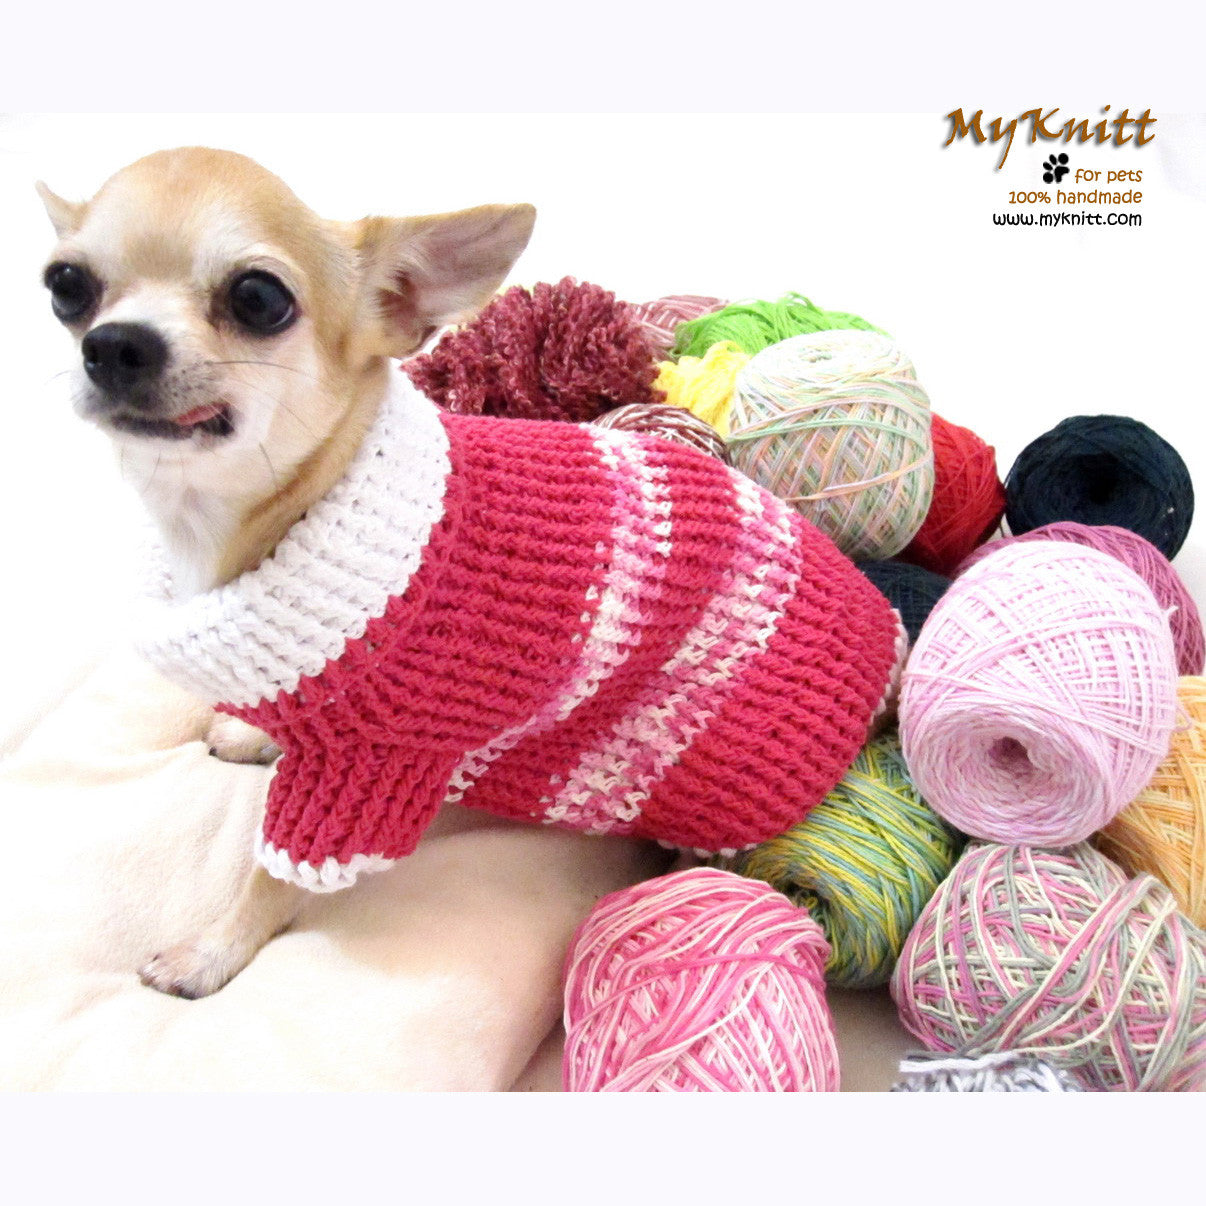 Pink Kimono Chihuahua Sweater DK863 by Myknitt